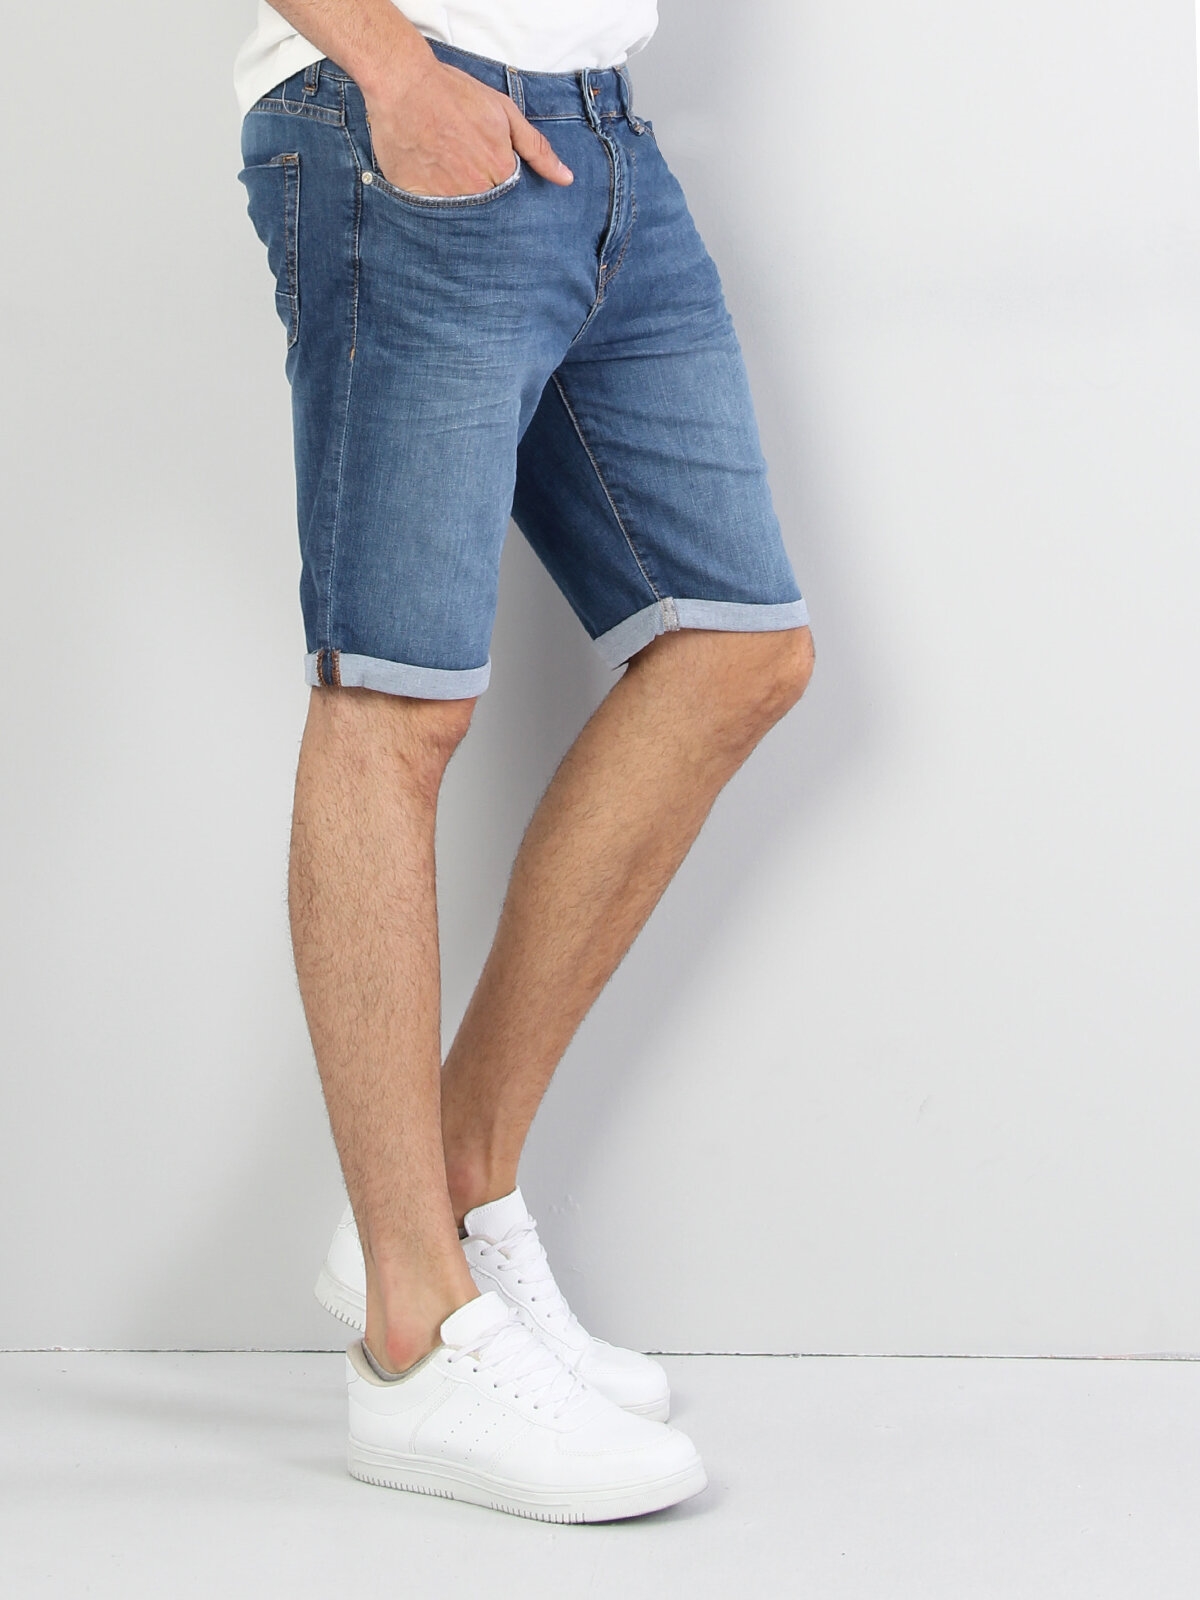 Afișați detalii pentru Short / Pantaloni Scurti De Barbati Albastru Straight Fit 